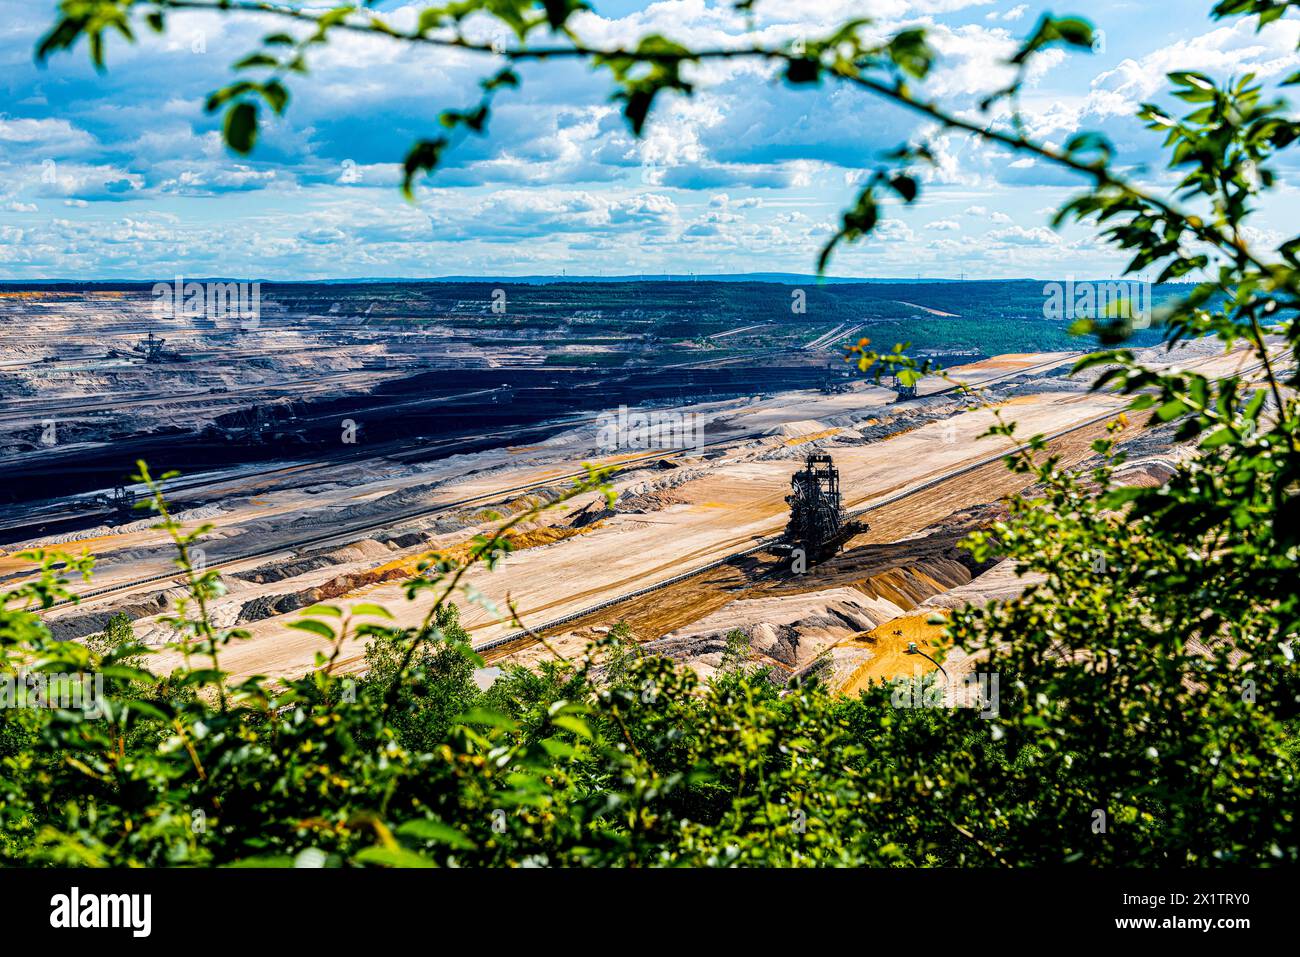 Mine de lignite de Hambach Tagebau la mine de lignite de Hambach et de charbon brun à ciel ouvert alimente une centrale électrique, mais est considérée comme évacuant beaucoup de carbone et de CO2. En temps de réchauffement climatique, cette méthode de production d'électricité est obsolète, beaucoup de gens croient. Aide à ce problème, les mines à fosse ouverte ont un impact énorme sur la gestion du paysage et de l'eau. Hambach, Allemagne. AM Tagebau, Niederzier Tagebau Hambach Nordrhein - Westphalen Allemagne Copyright : xGuidoxKoppesx Banque D'Images